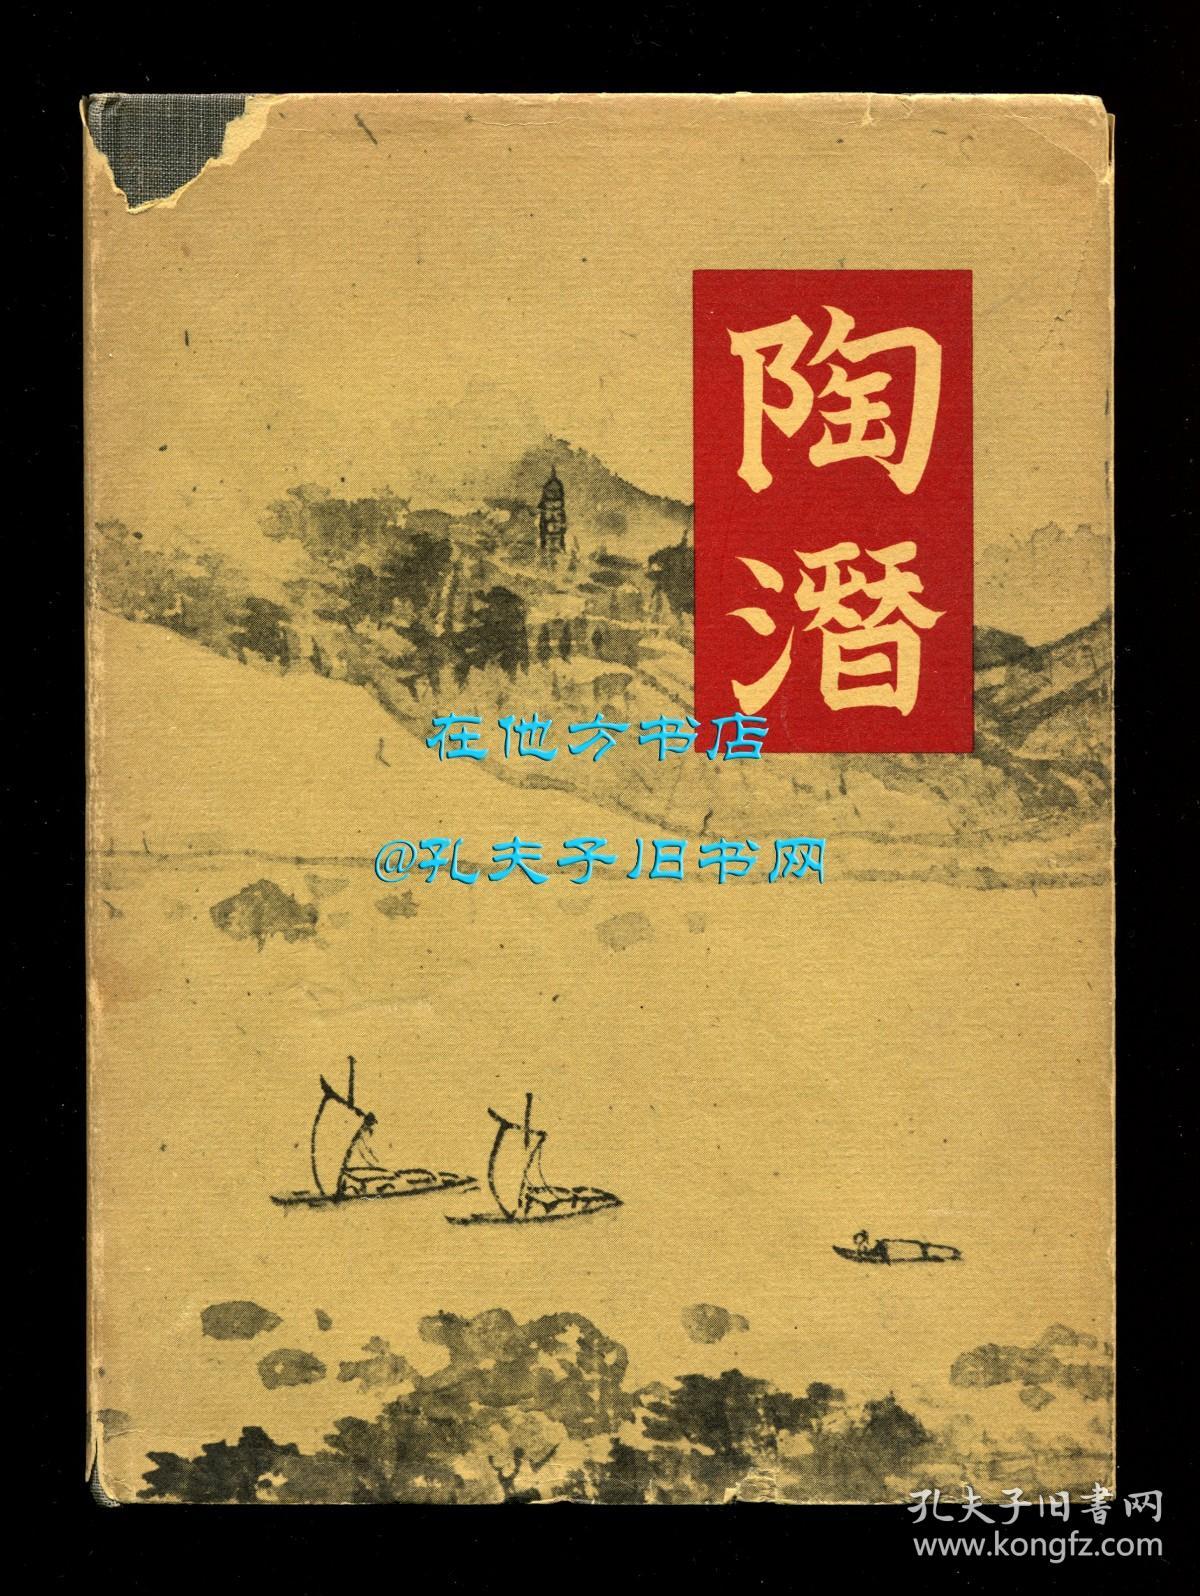 【签名本】《陶潜诗集》（The Poems of T'ao Ch'ien），陶渊明诗歌英文译本，张葆瑚、辛克莱尔翻译，1953年初版精装，辛克莱尔签赠